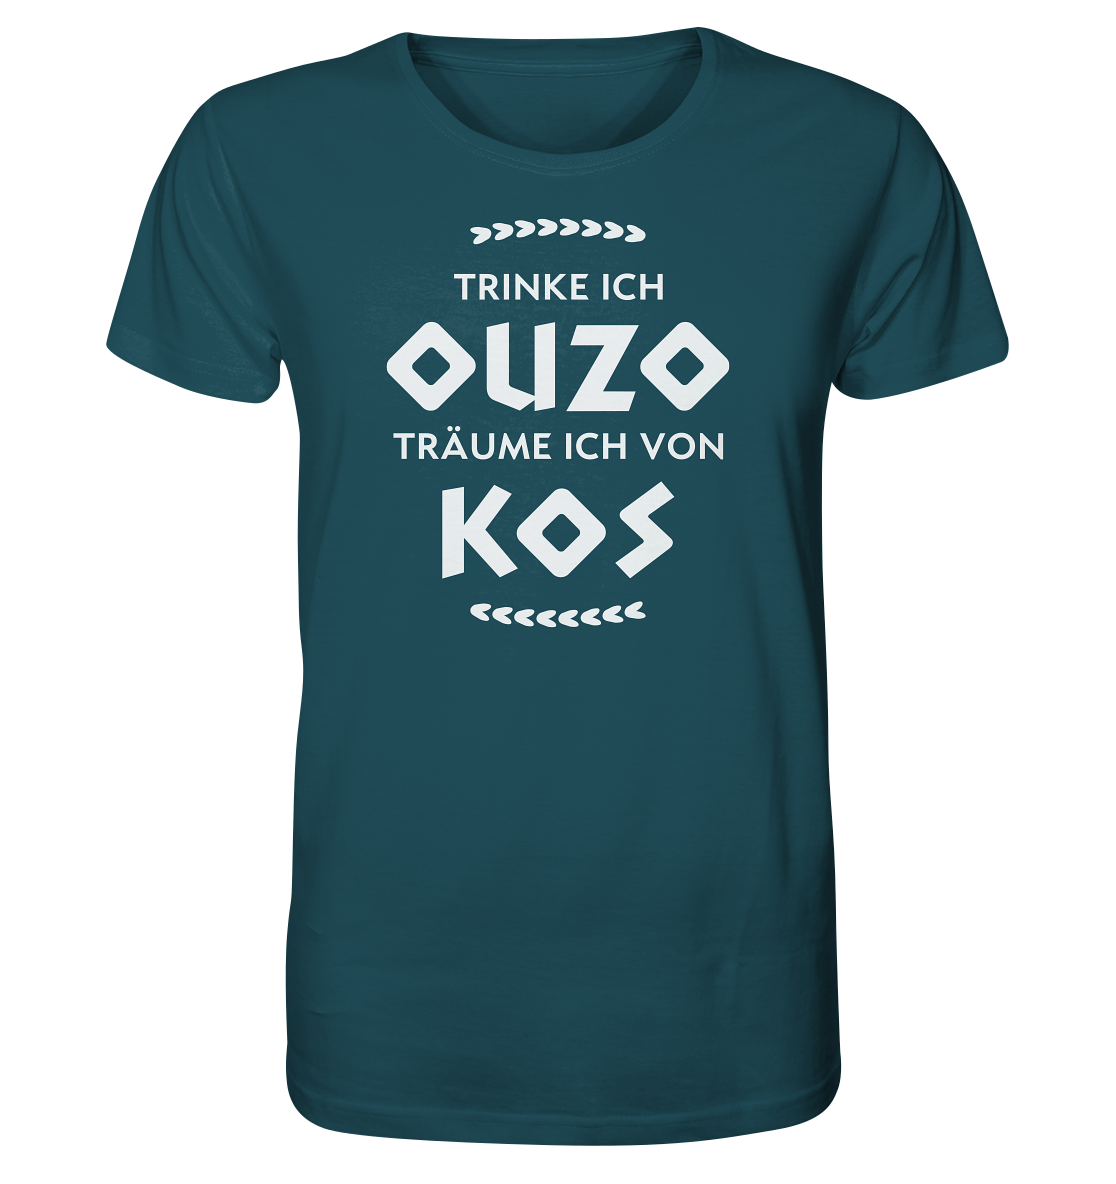 Trinke ich Ouzo träume ich von Kos - Organic Shirt